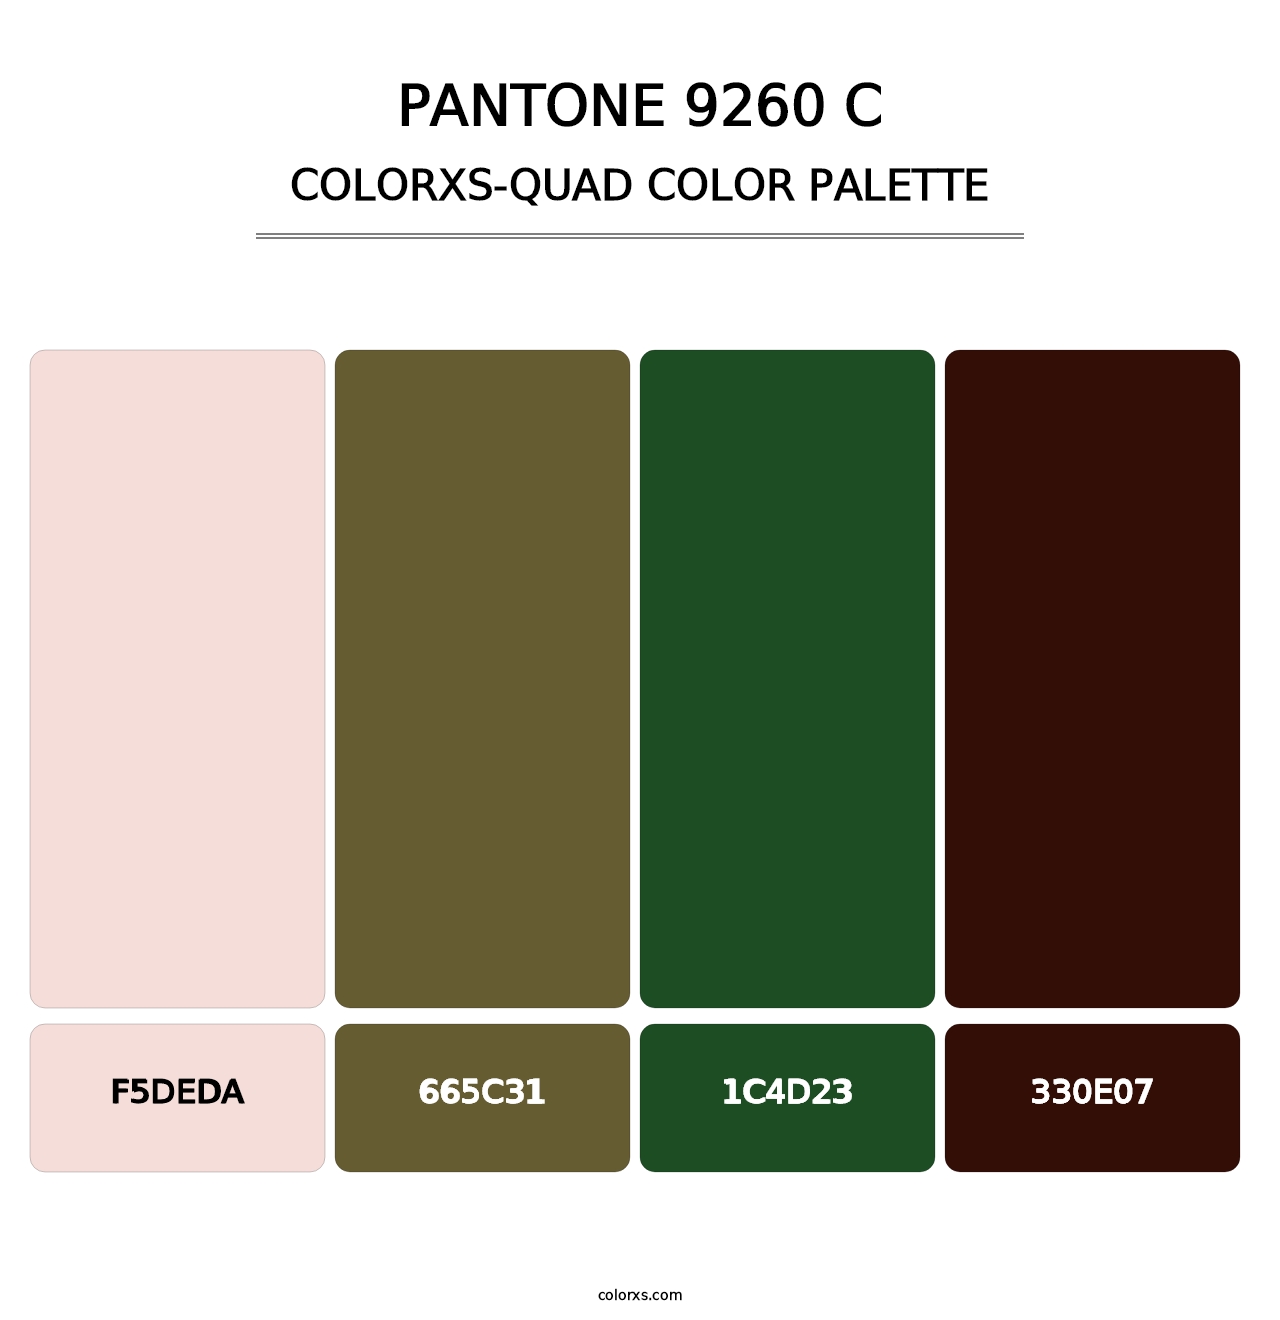 PANTONE 9260 C - Colorxs Quad Palette